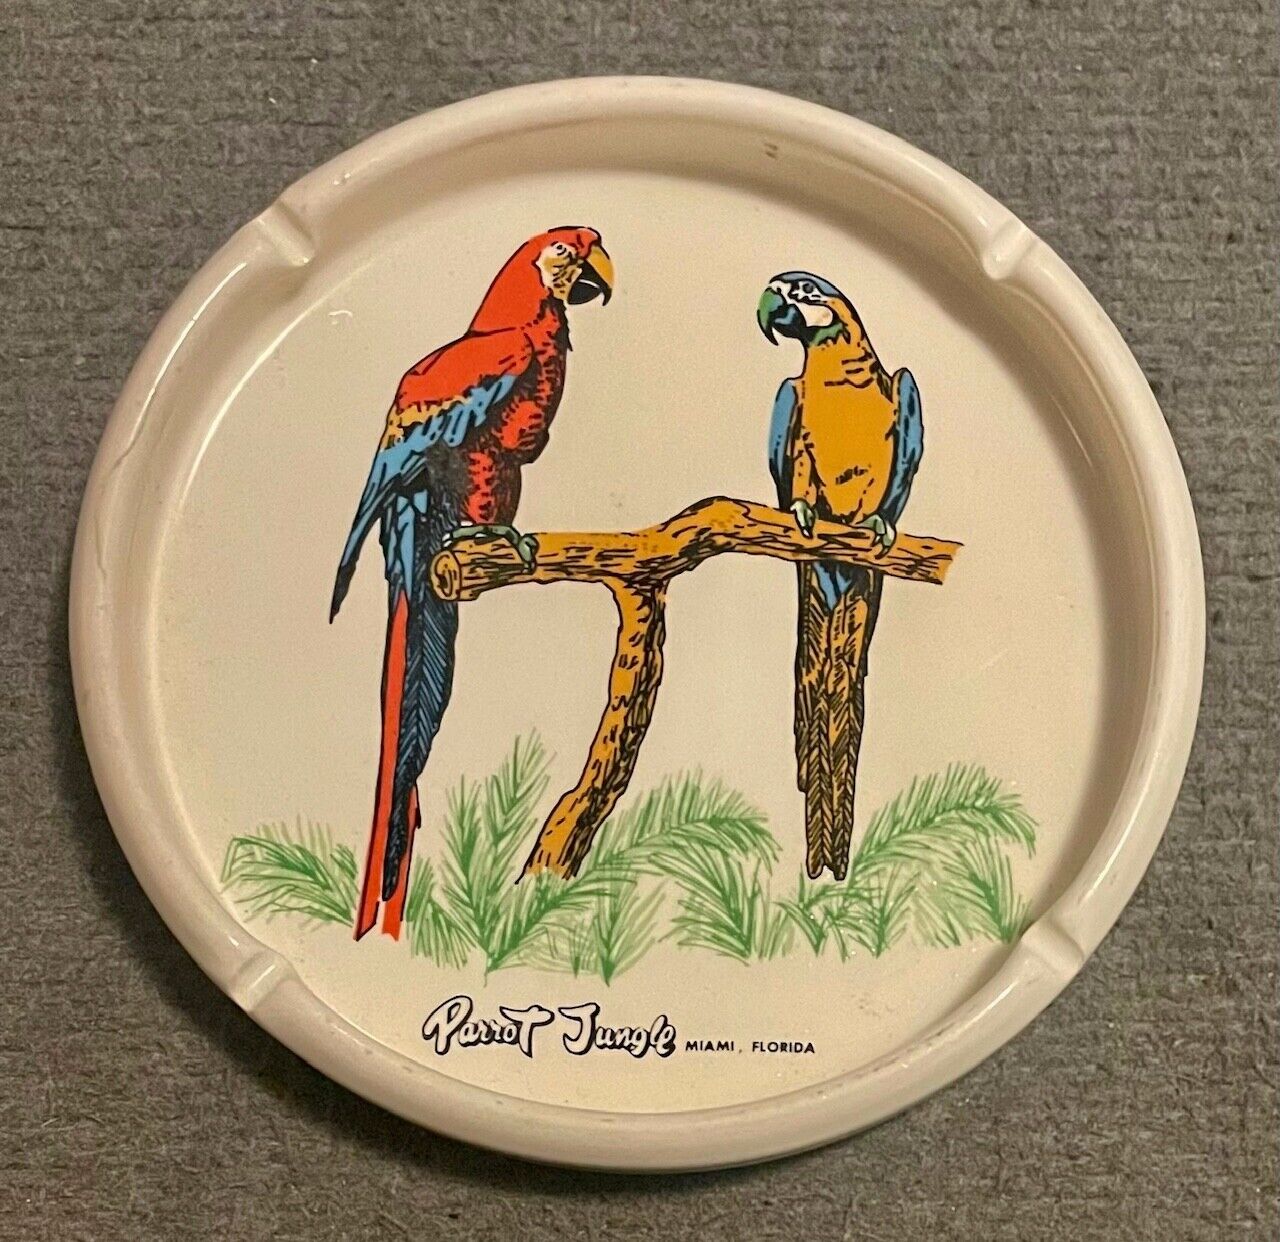 Vintage 1960s Miami Florida Parrot Jungle Large Ceramic Ashtray